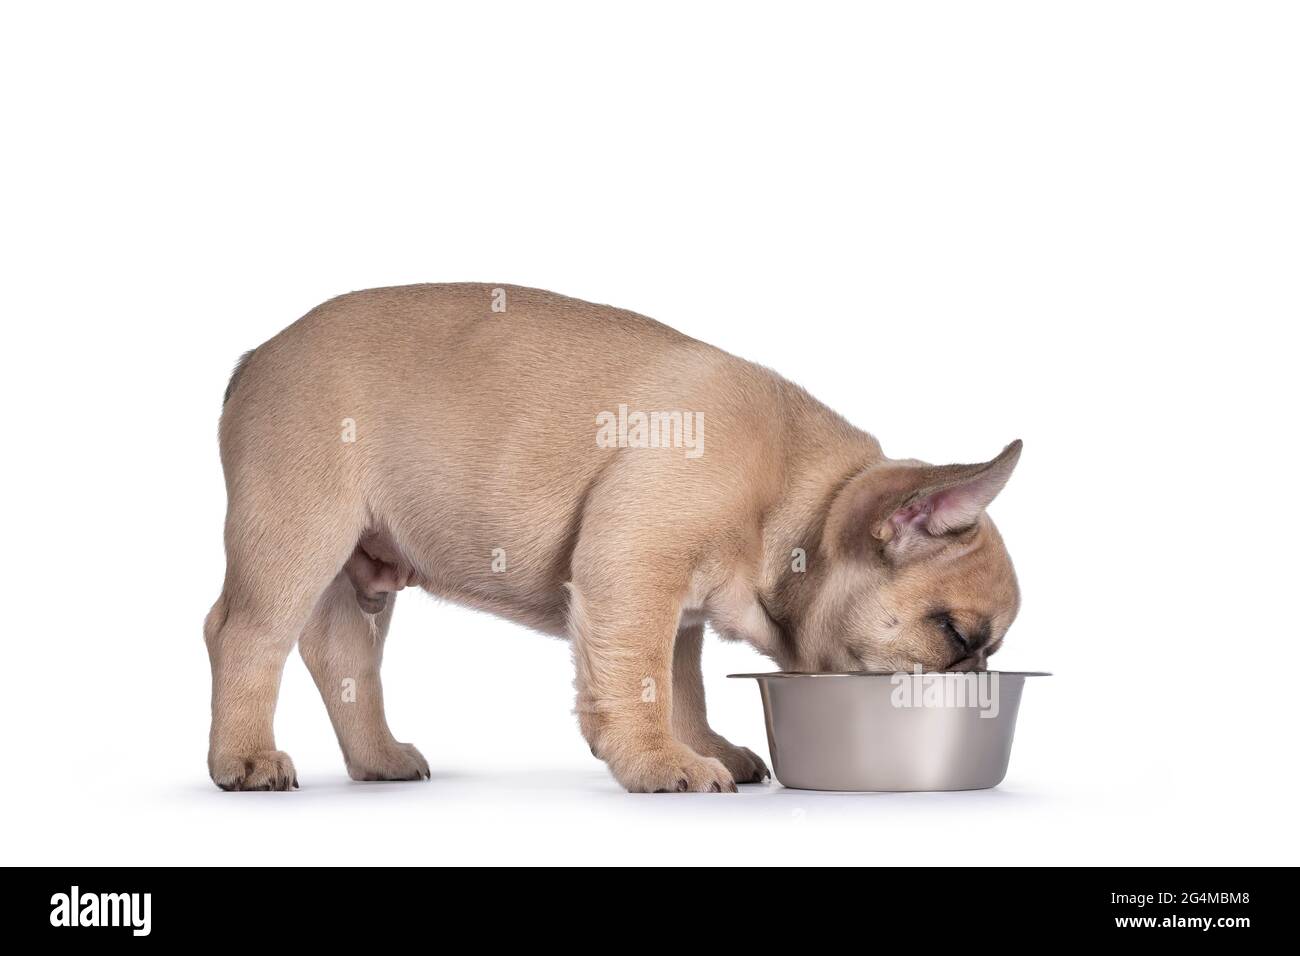 Adorable fauve chiot Bulldog français, debout façons de manger ou de boire à partir d'un bol en métal. Isolé sur un fond blanc. Banque D'Images